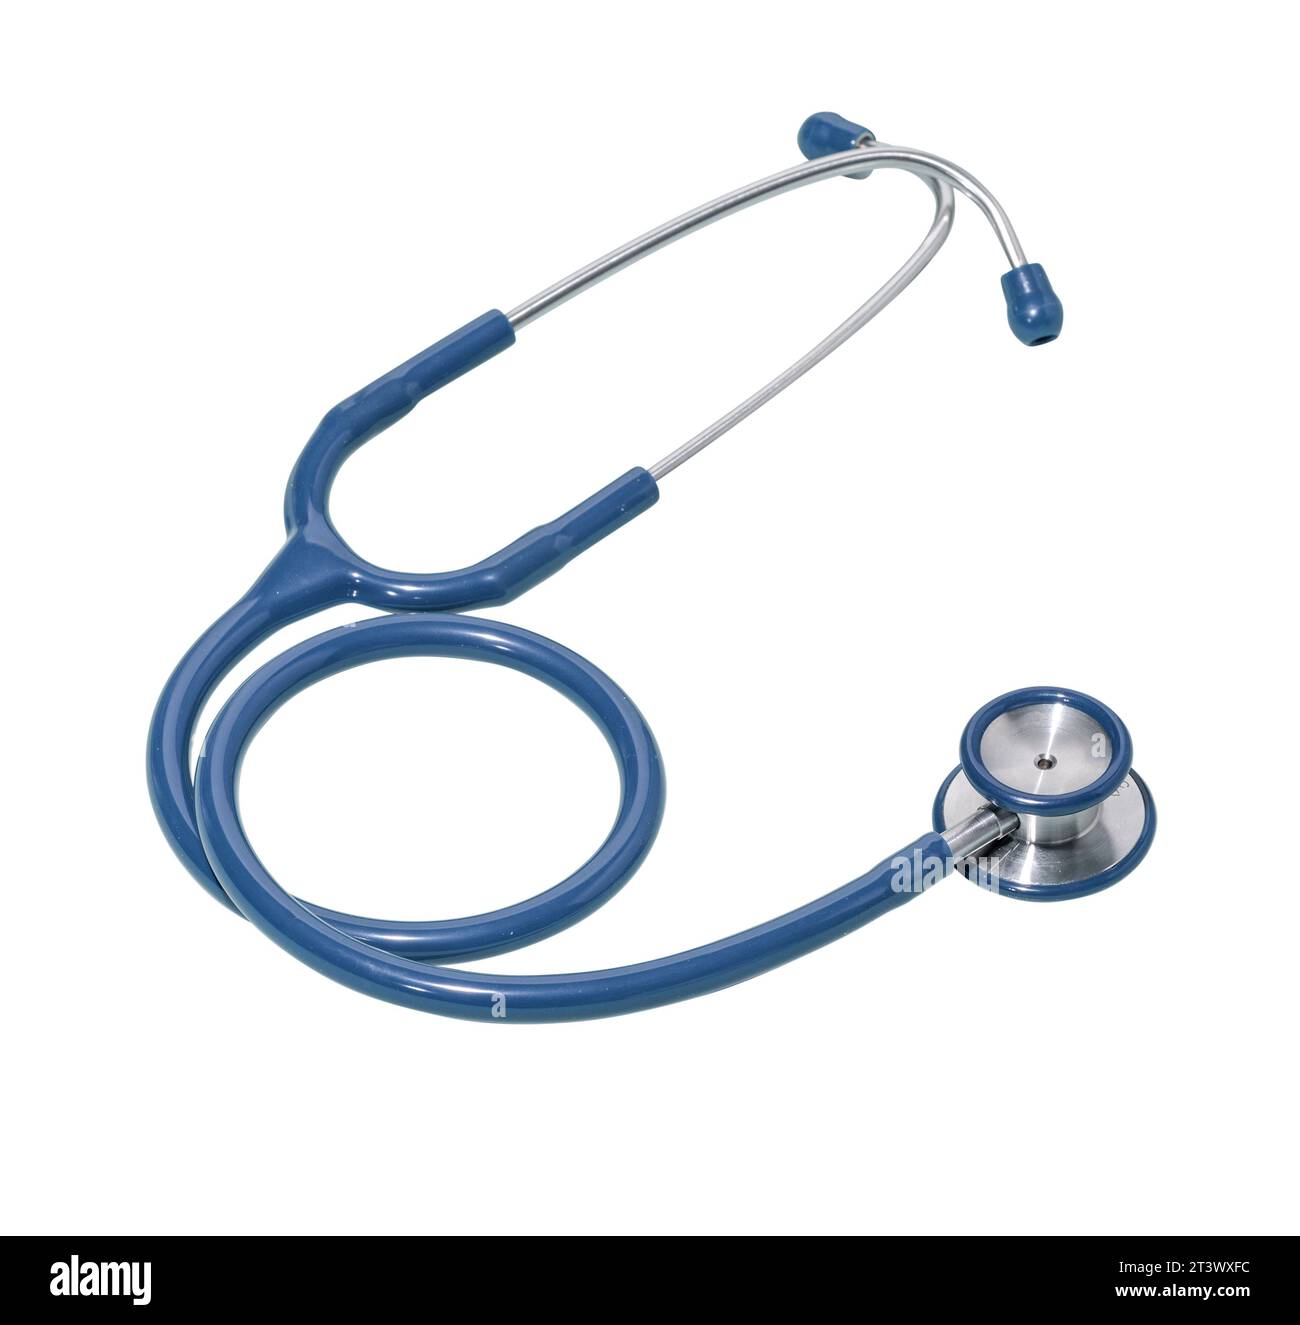 Medizinische Stethoskop für auskultation: Gesundheitswesen, Medizin und Diagnostik Konzept Stockfoto